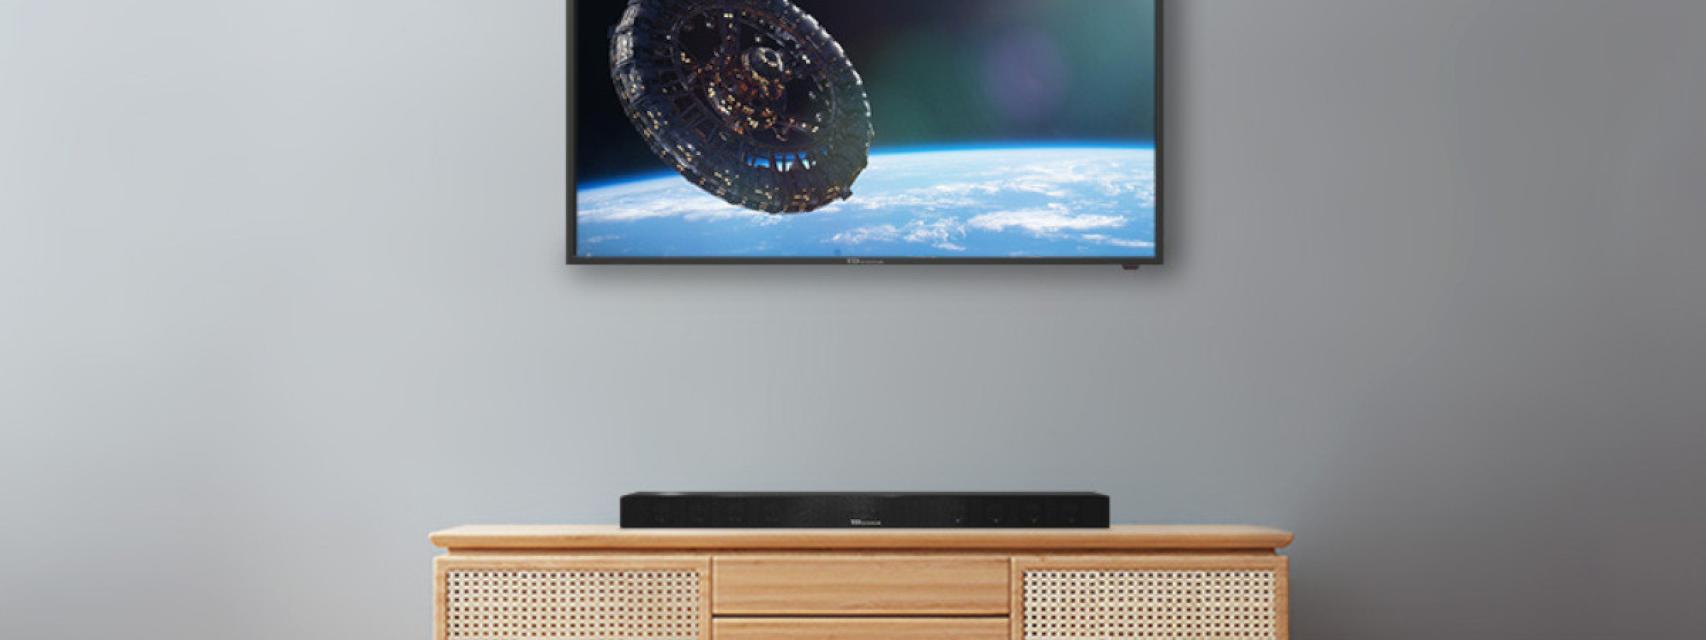 Menos de 170€! Llévate una de las mejores smart TV de 40 pulgadas relación  calidad y precio